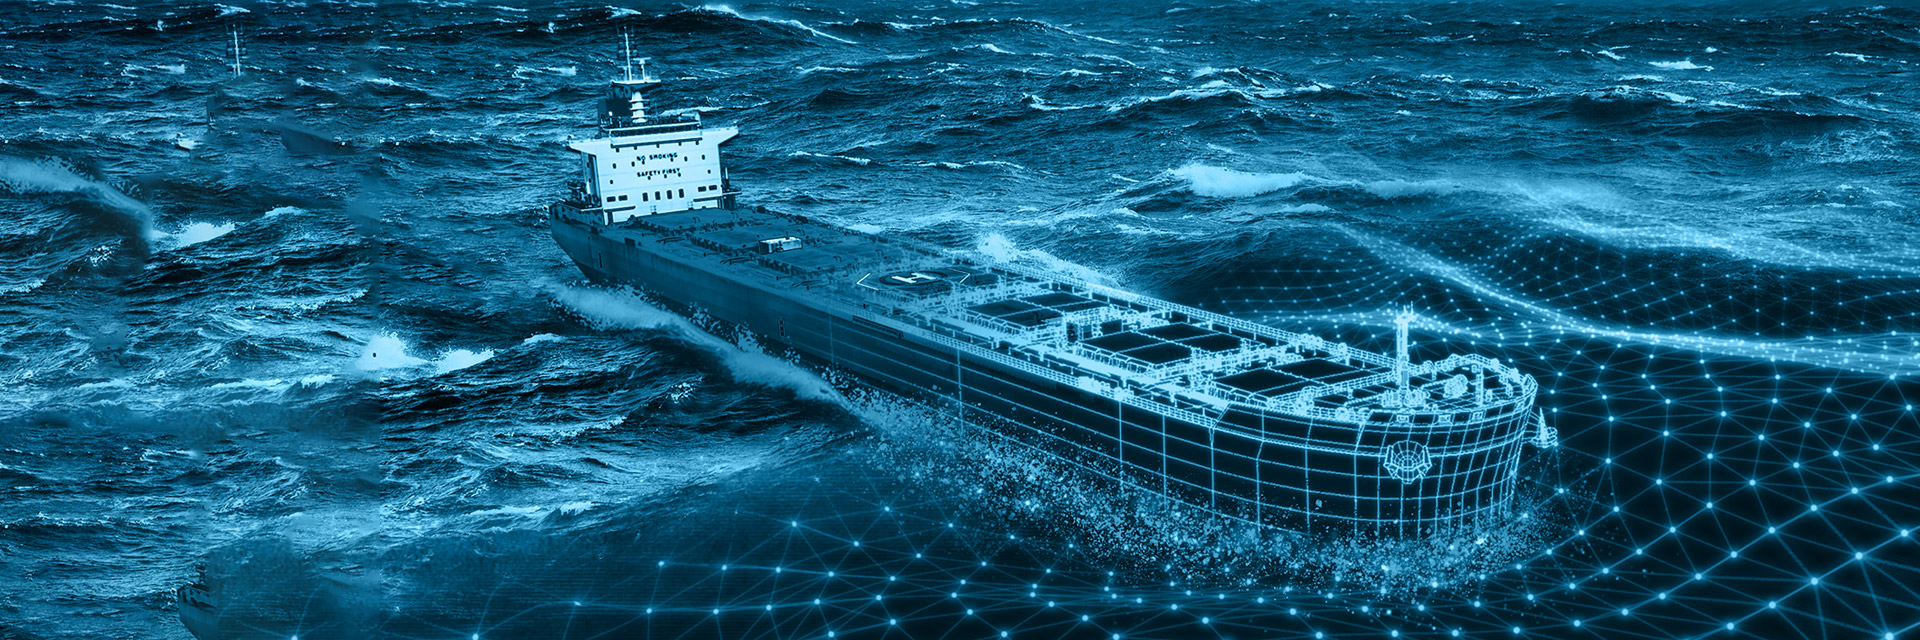 Комплексное цифровое строительство судов, кораблей и средств океанотехники